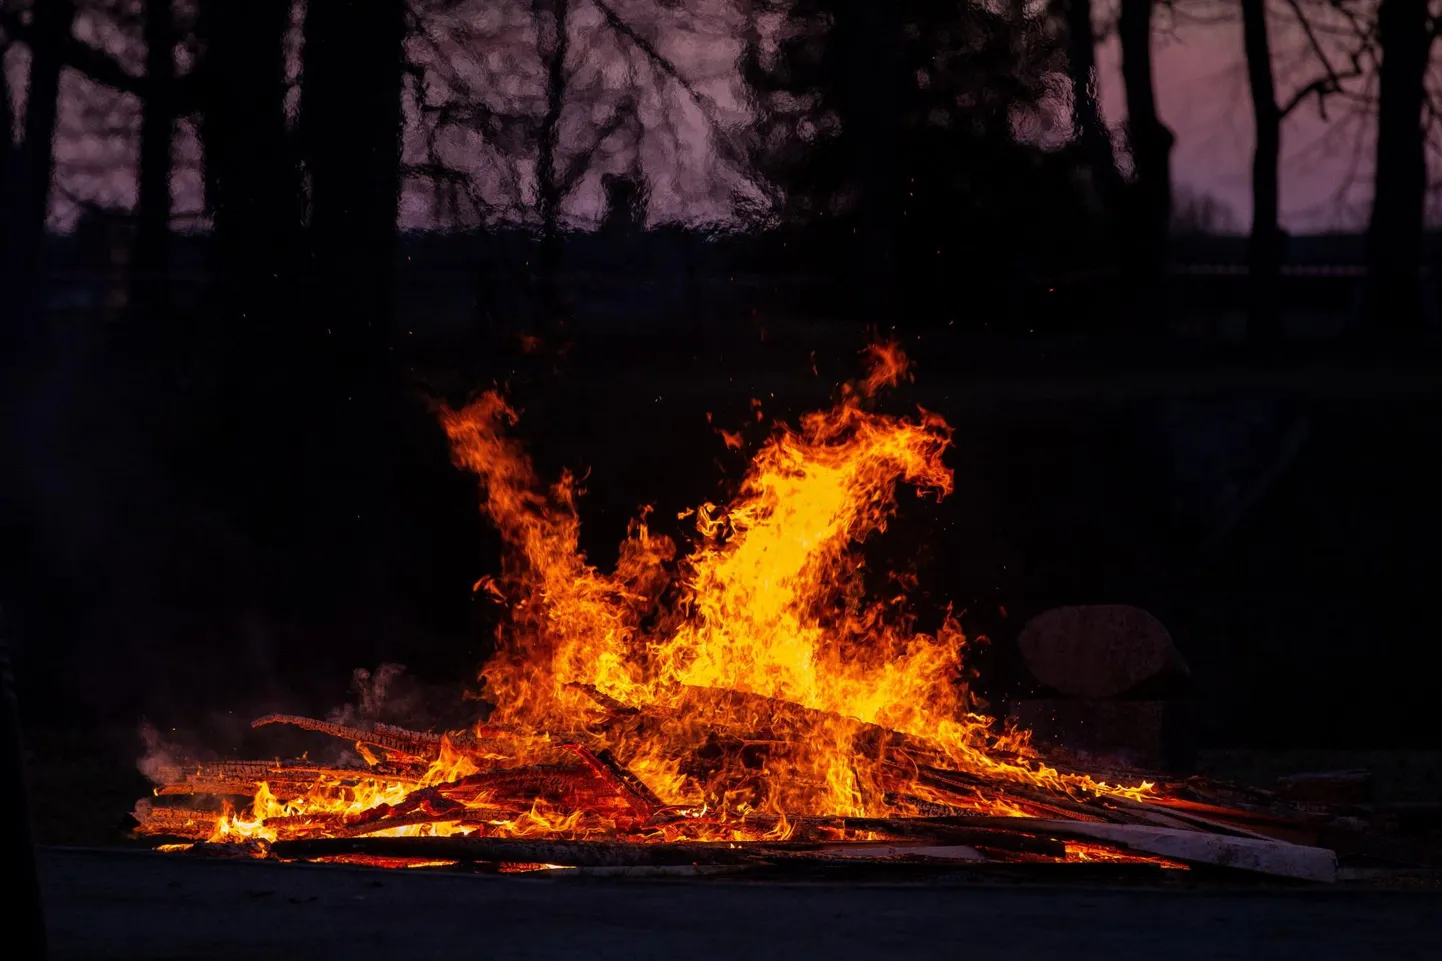 Järelevalveta lõke võib lihtsasti tekitada suure põlengu. Päästeamet rõhutab, et lõket tuleb alati valvata. Pilt on illustratiivne.